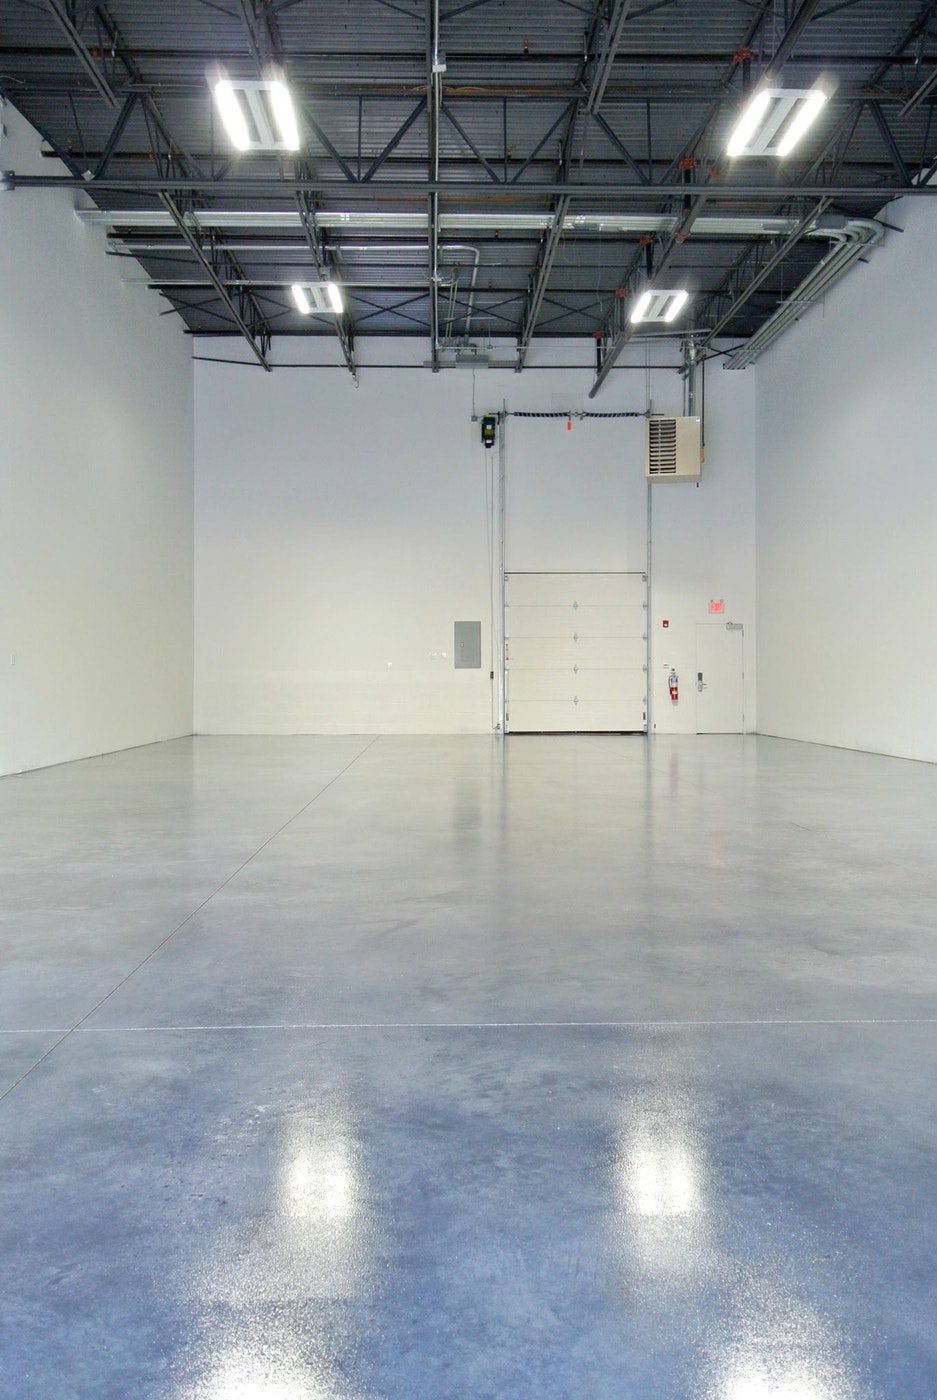 duraamen warehouse floor coating nbspThe Best Warehouse Flooring is Polished Concrete Flooring | Duraamen | Duraamen Engineered Products Inc